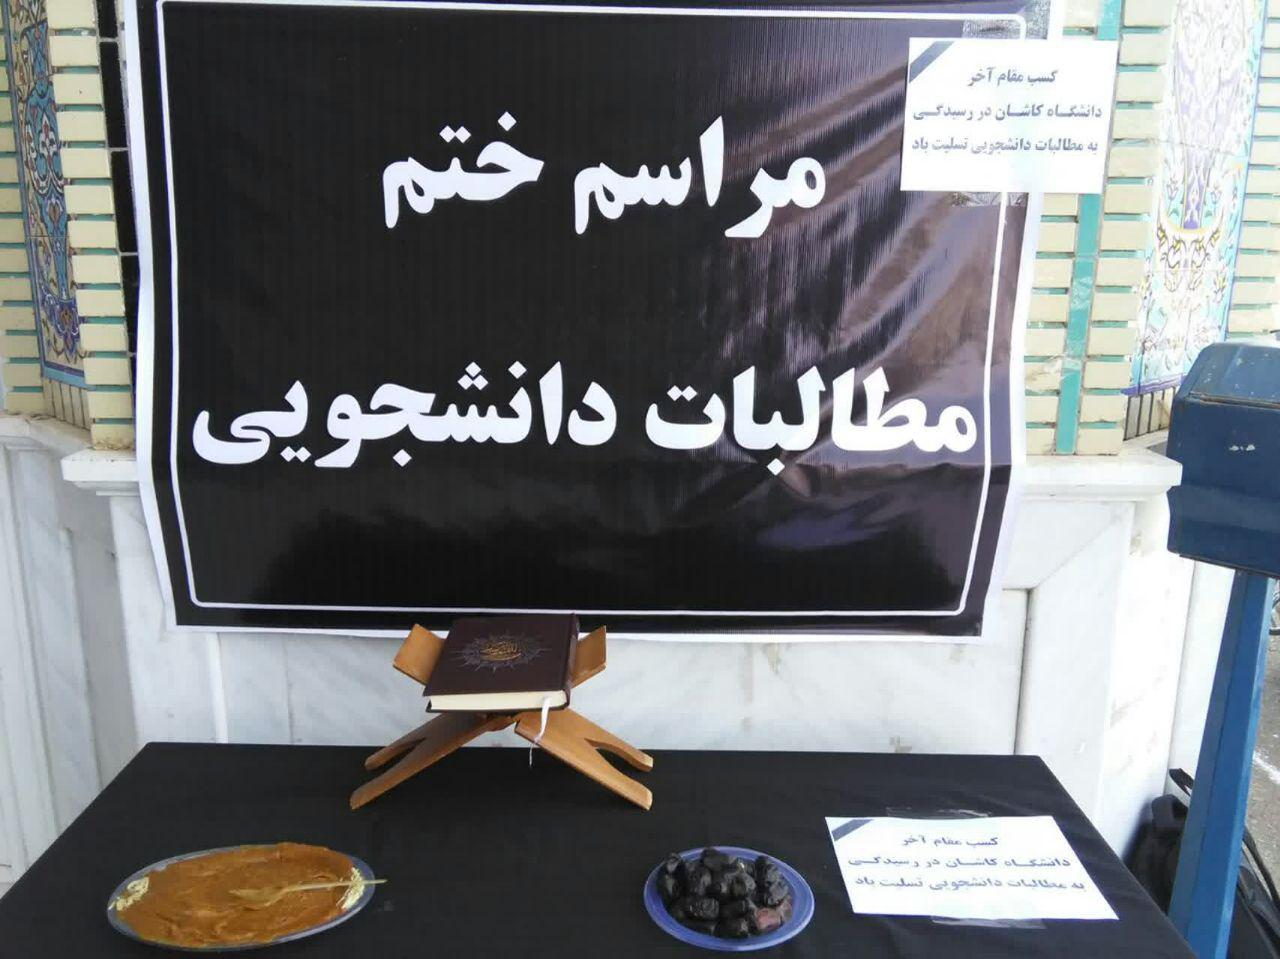 مراسم ختم پاسخگویی مسئولین دانشگاه کاشان به، مطالبات دانشجویان برگزار شد+ تصاویر